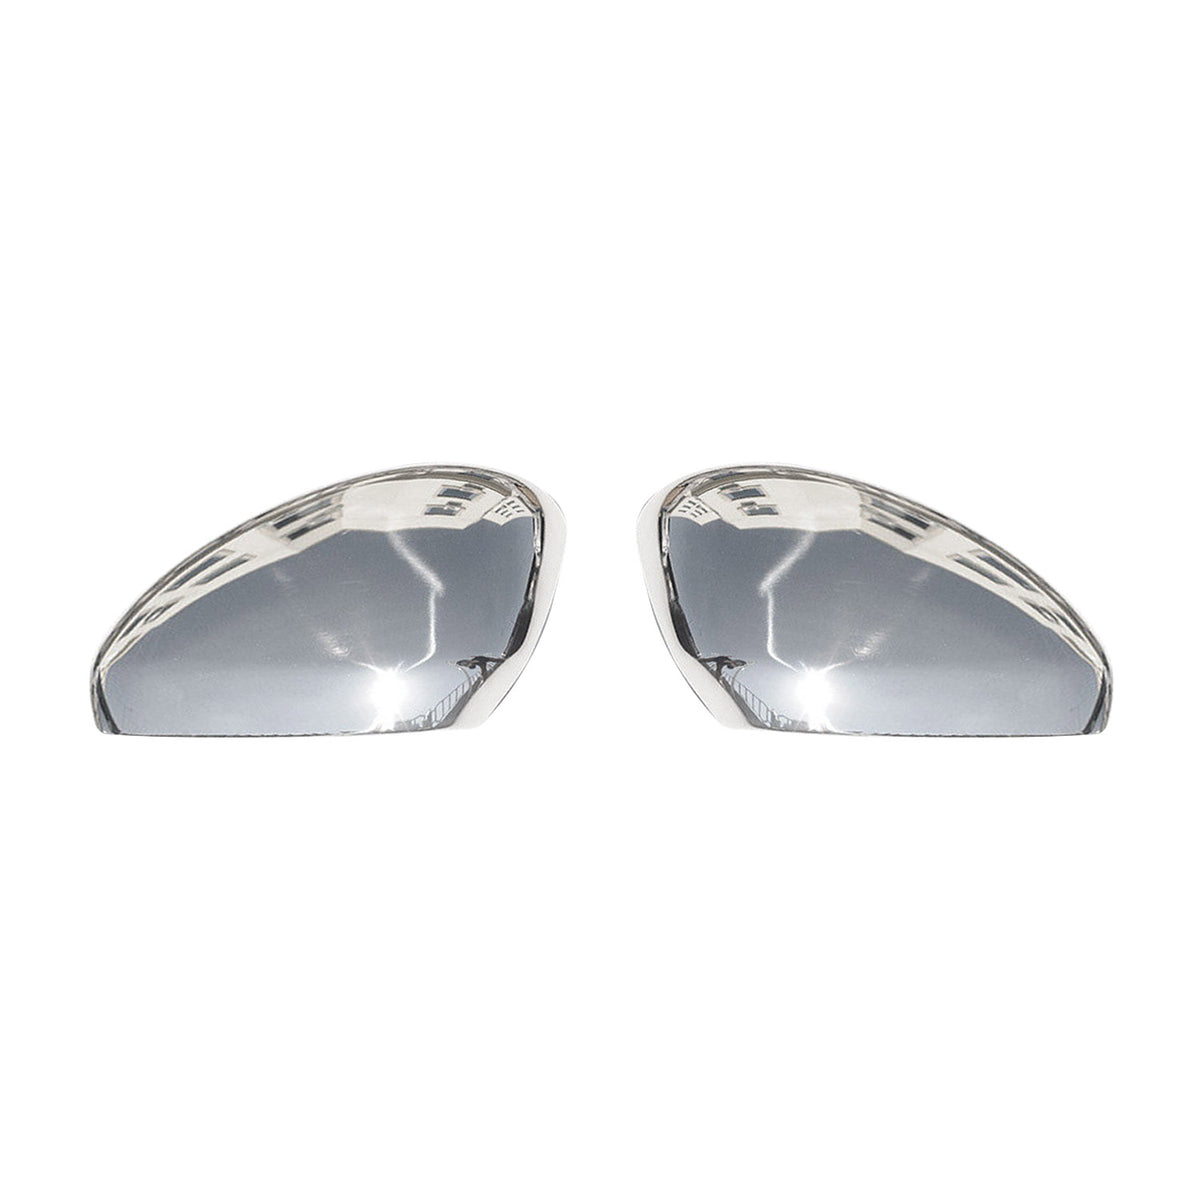 Spiegelkappen Spiegelabdeckung für Peugeot RCZ 2010-2015 Edelstahl Silber 2tlg